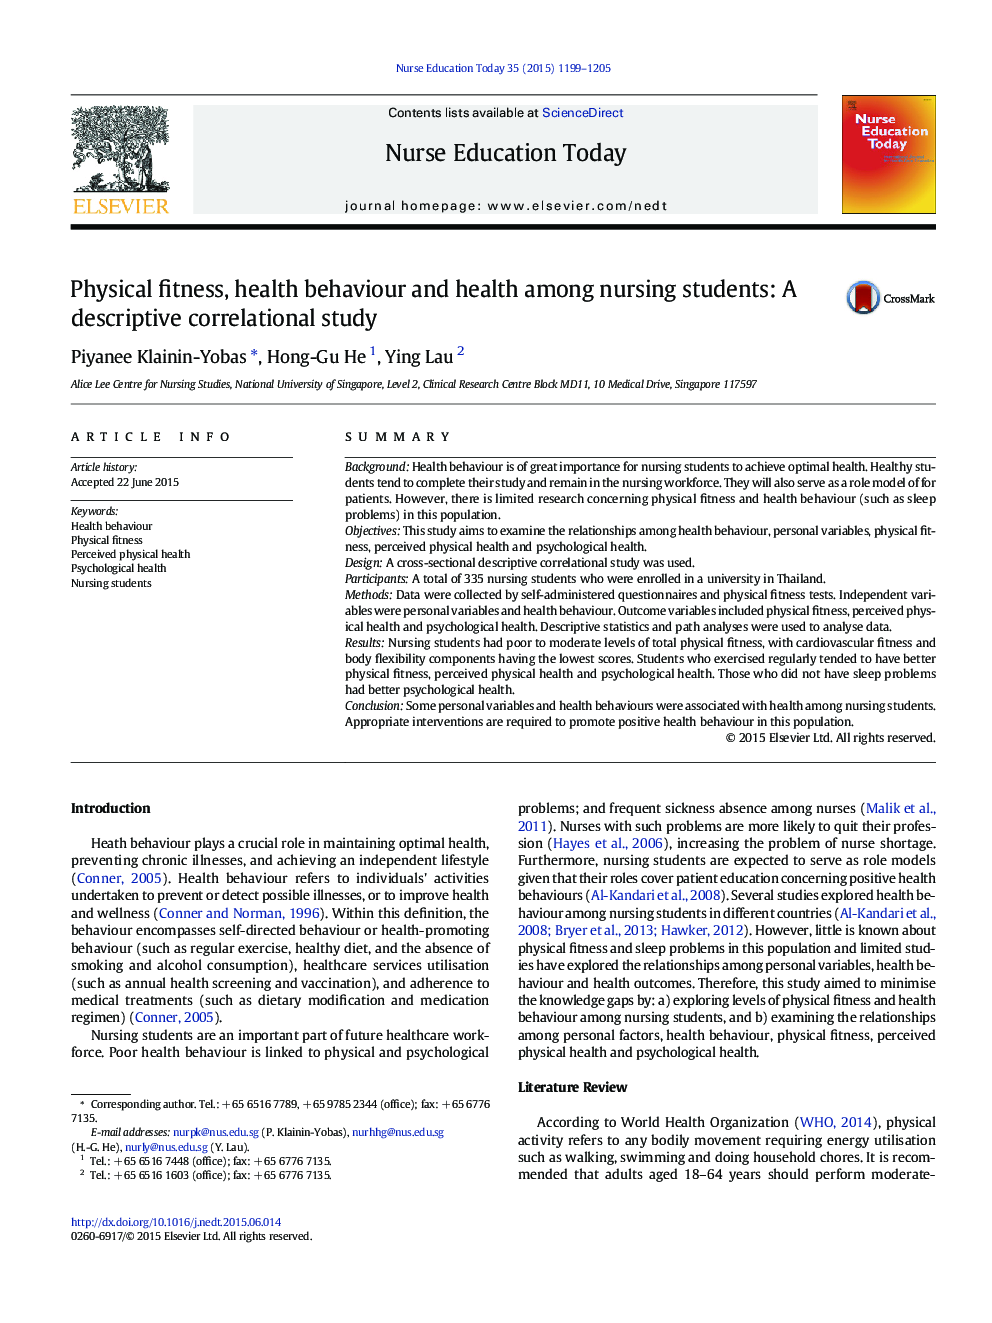 آمادگی جسمانی، رفتارهای بهداشتی و سلامت در دانش آموزان پرستاری: مطالعه توصیفی از نوع همبستگی